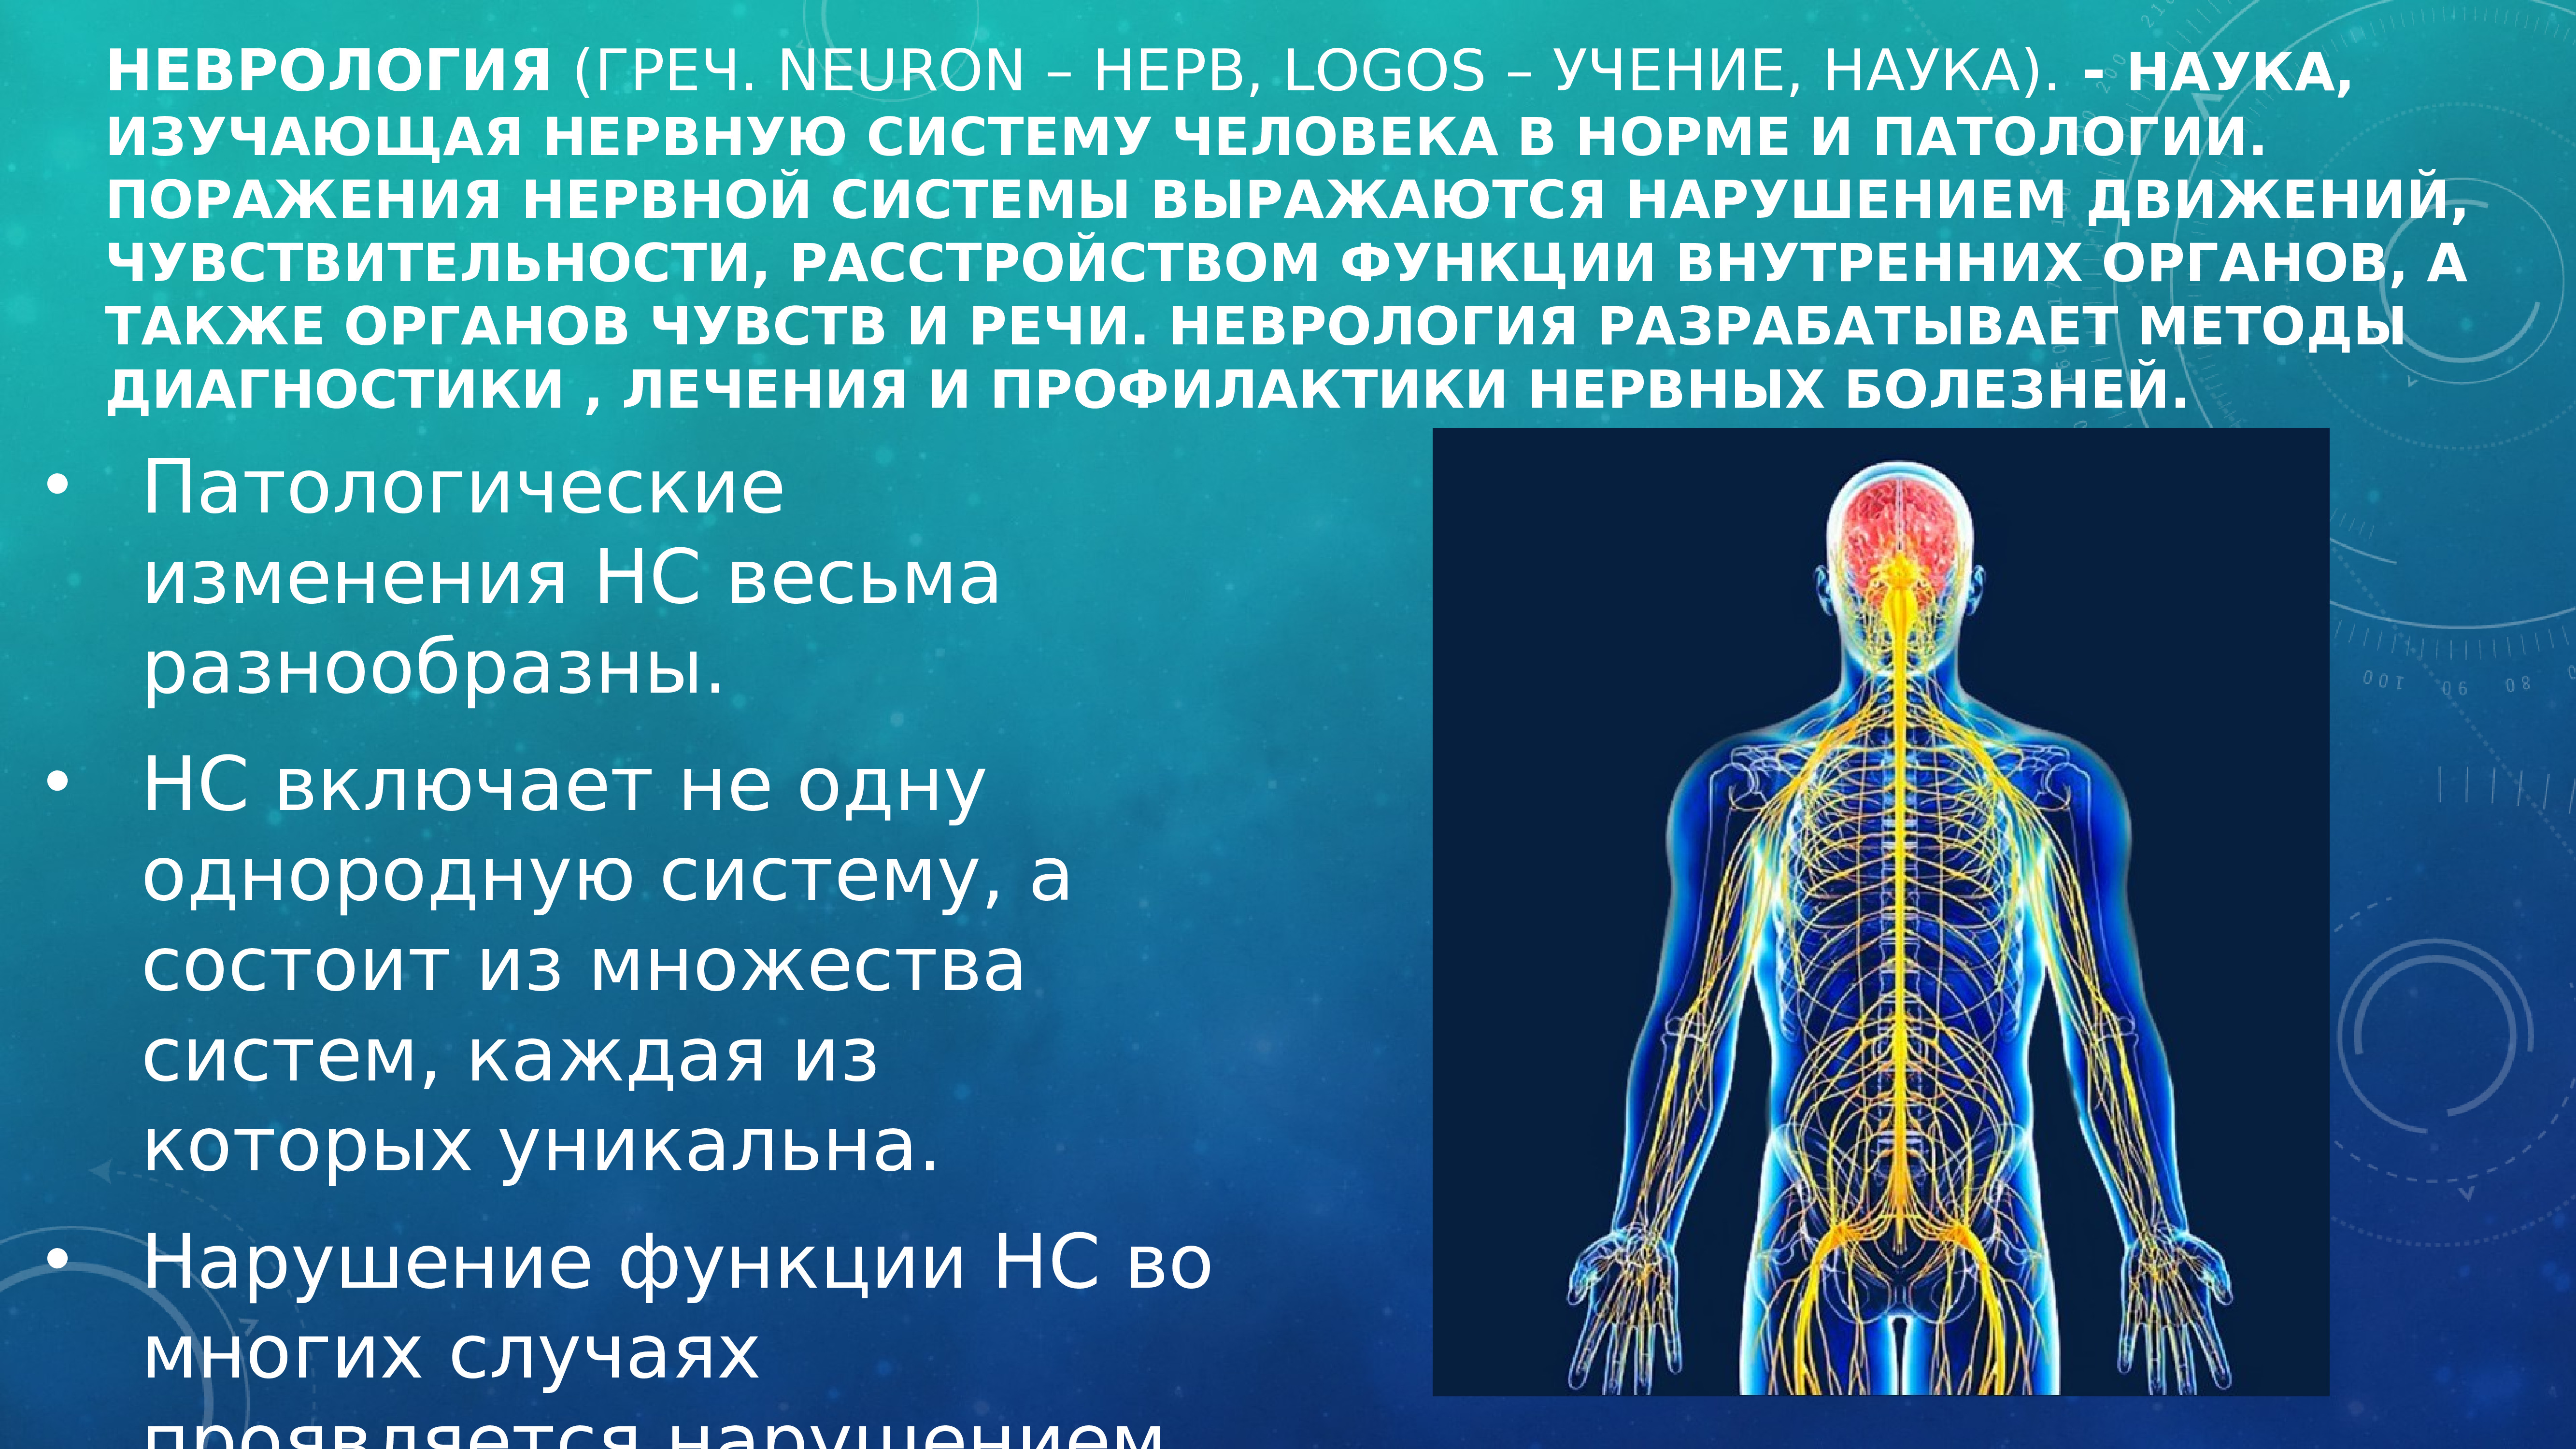 Нервные органы. Нервная система органы и функции. Роль нервной системы человека. Строение и работа нервной системы. Заболевания органов нервной системы.